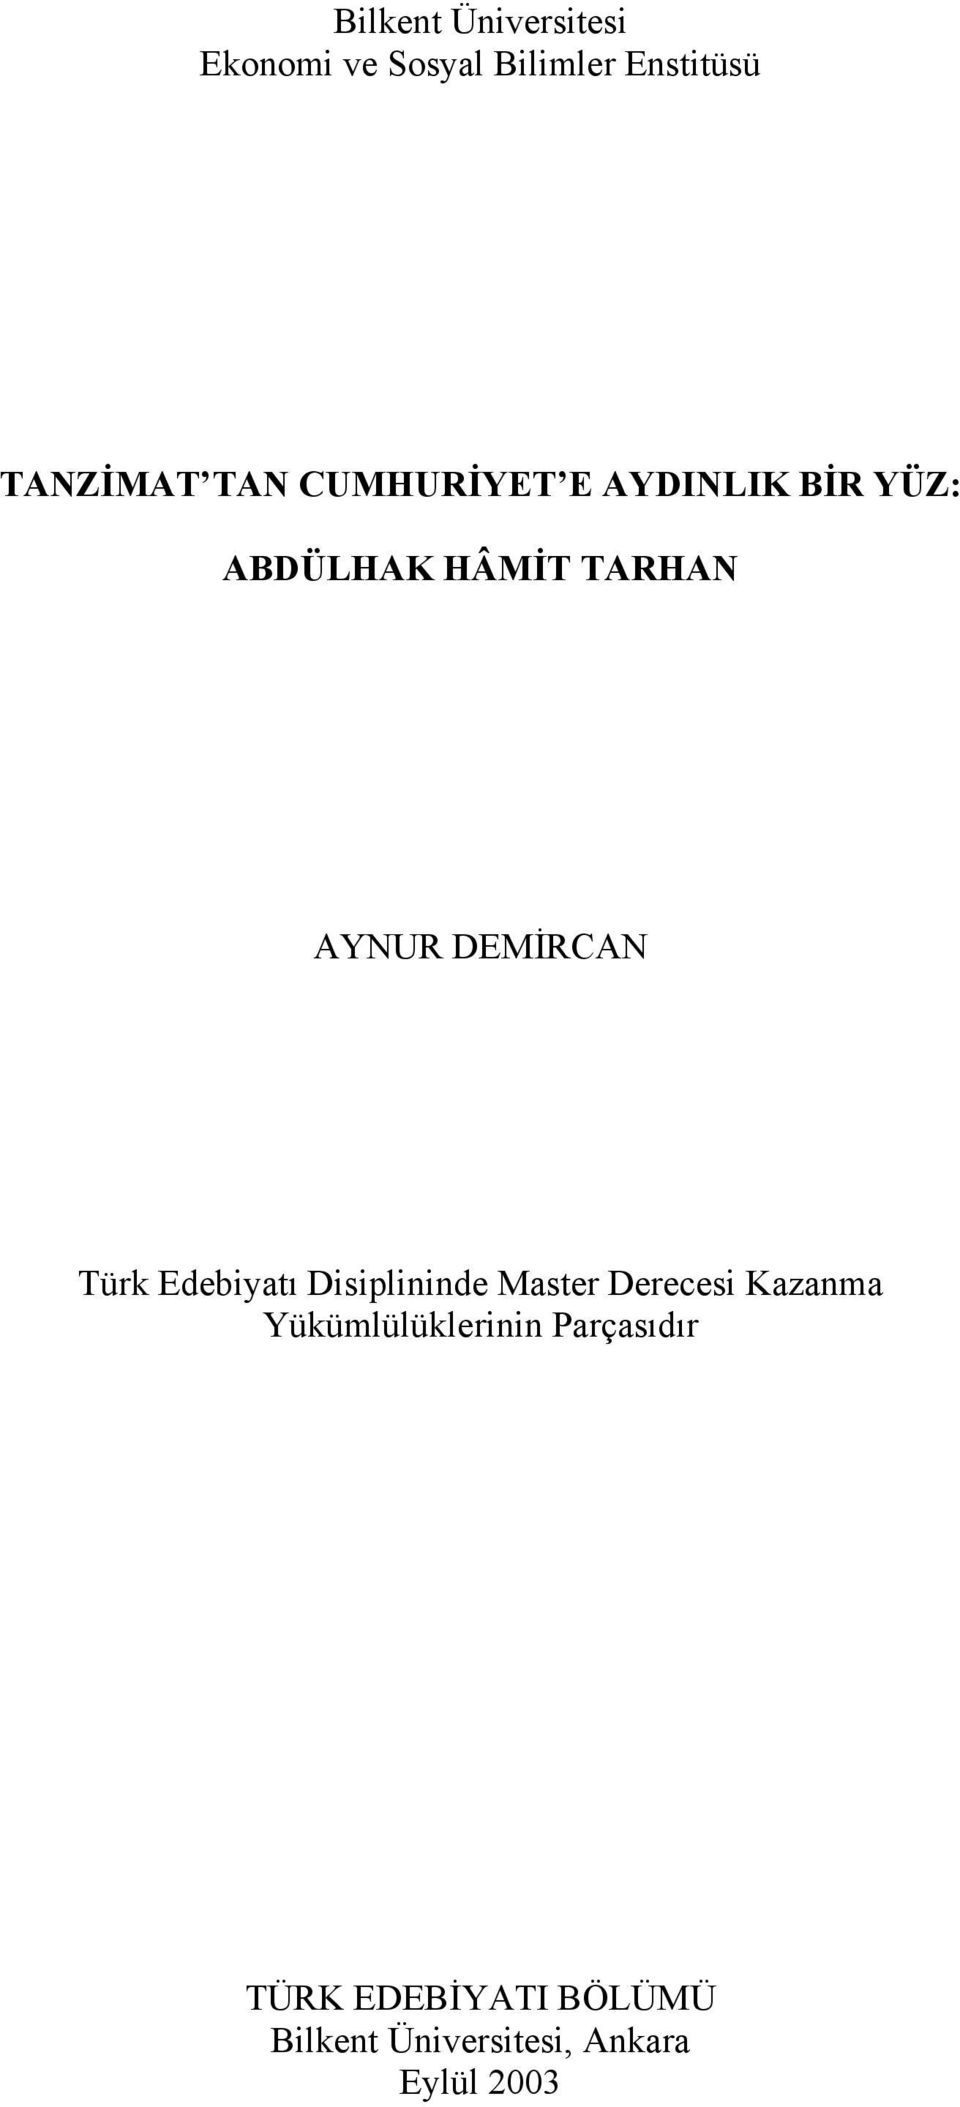 Türk Edebiyatı Disiplininde Master Derecesi Kazanma Yükümlülüklerinin